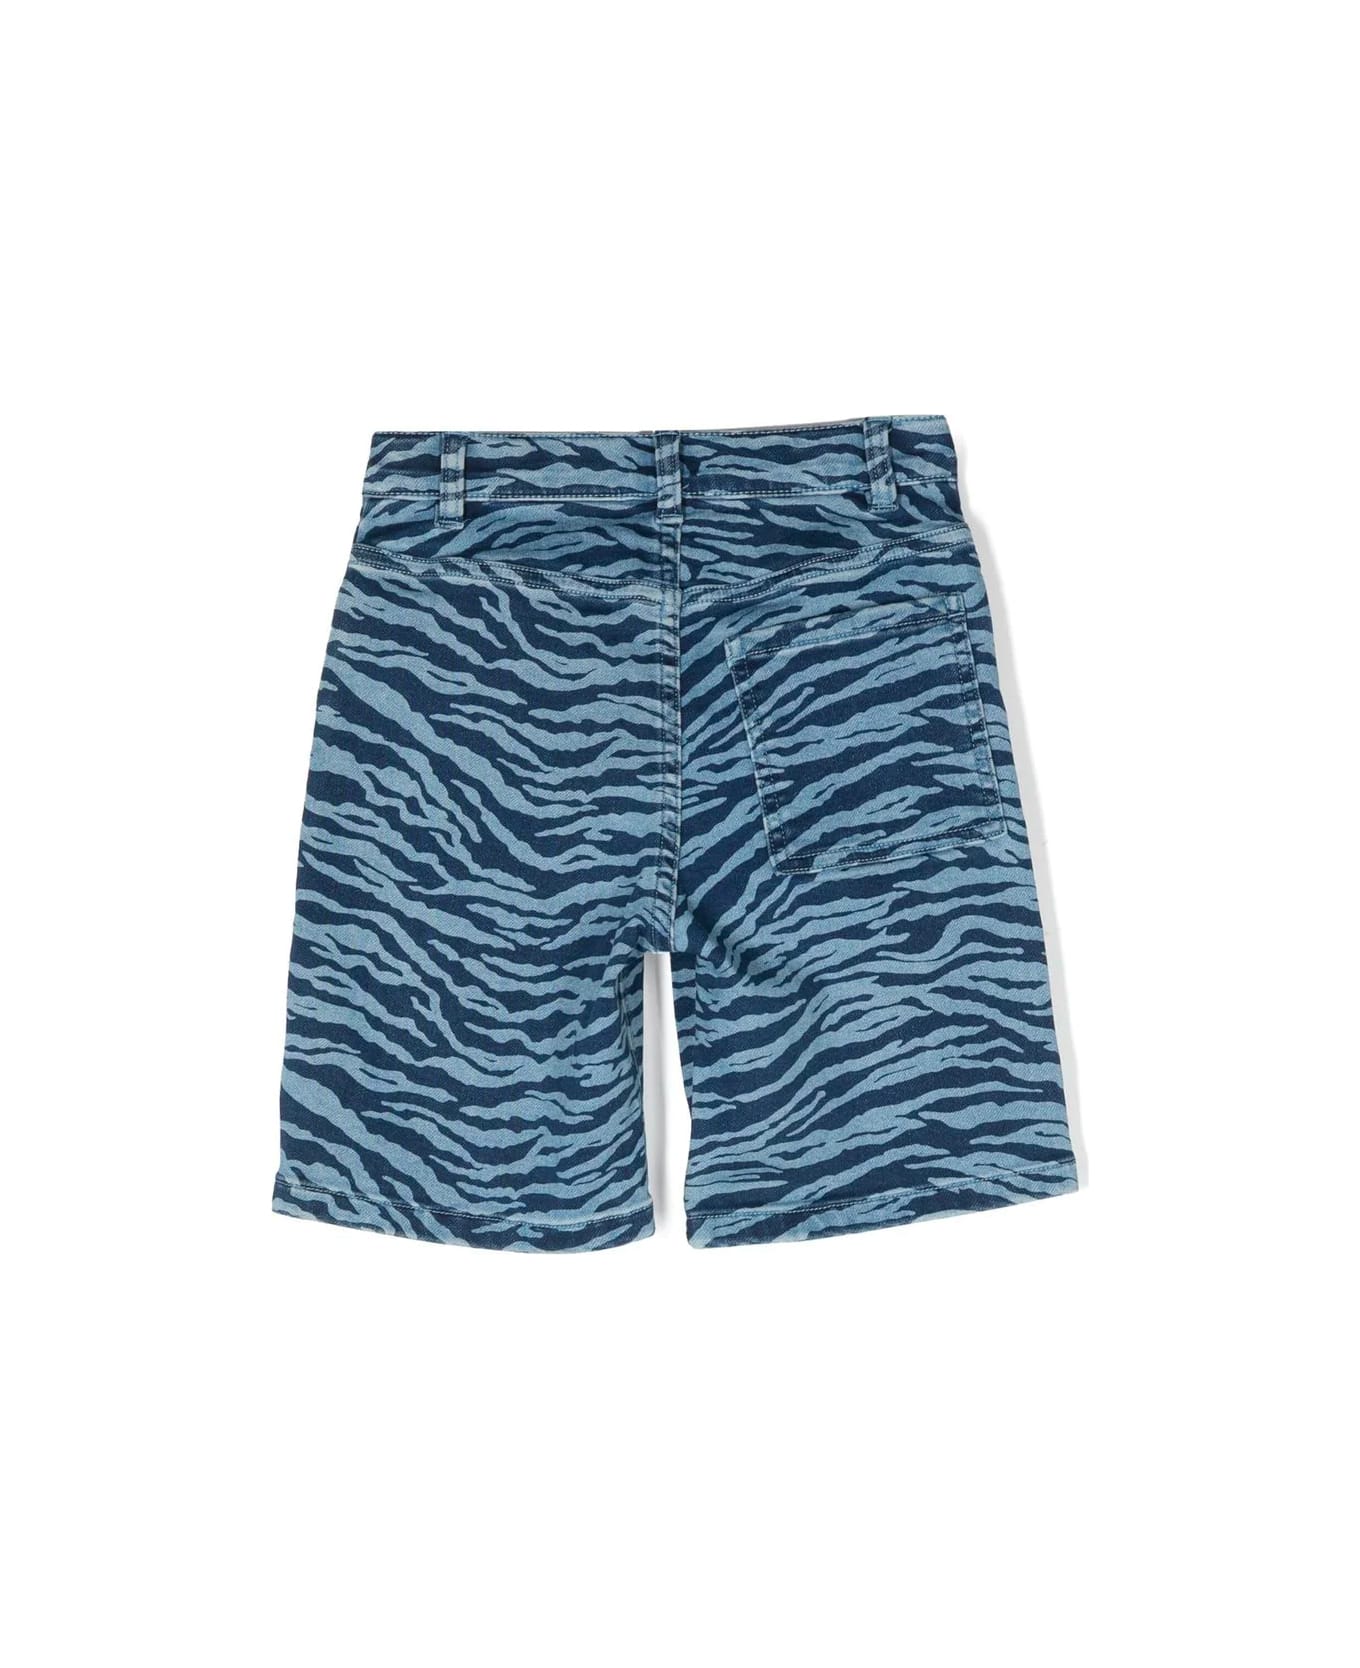 Kenzo Kids Bermuda Shorts - Slate Blue